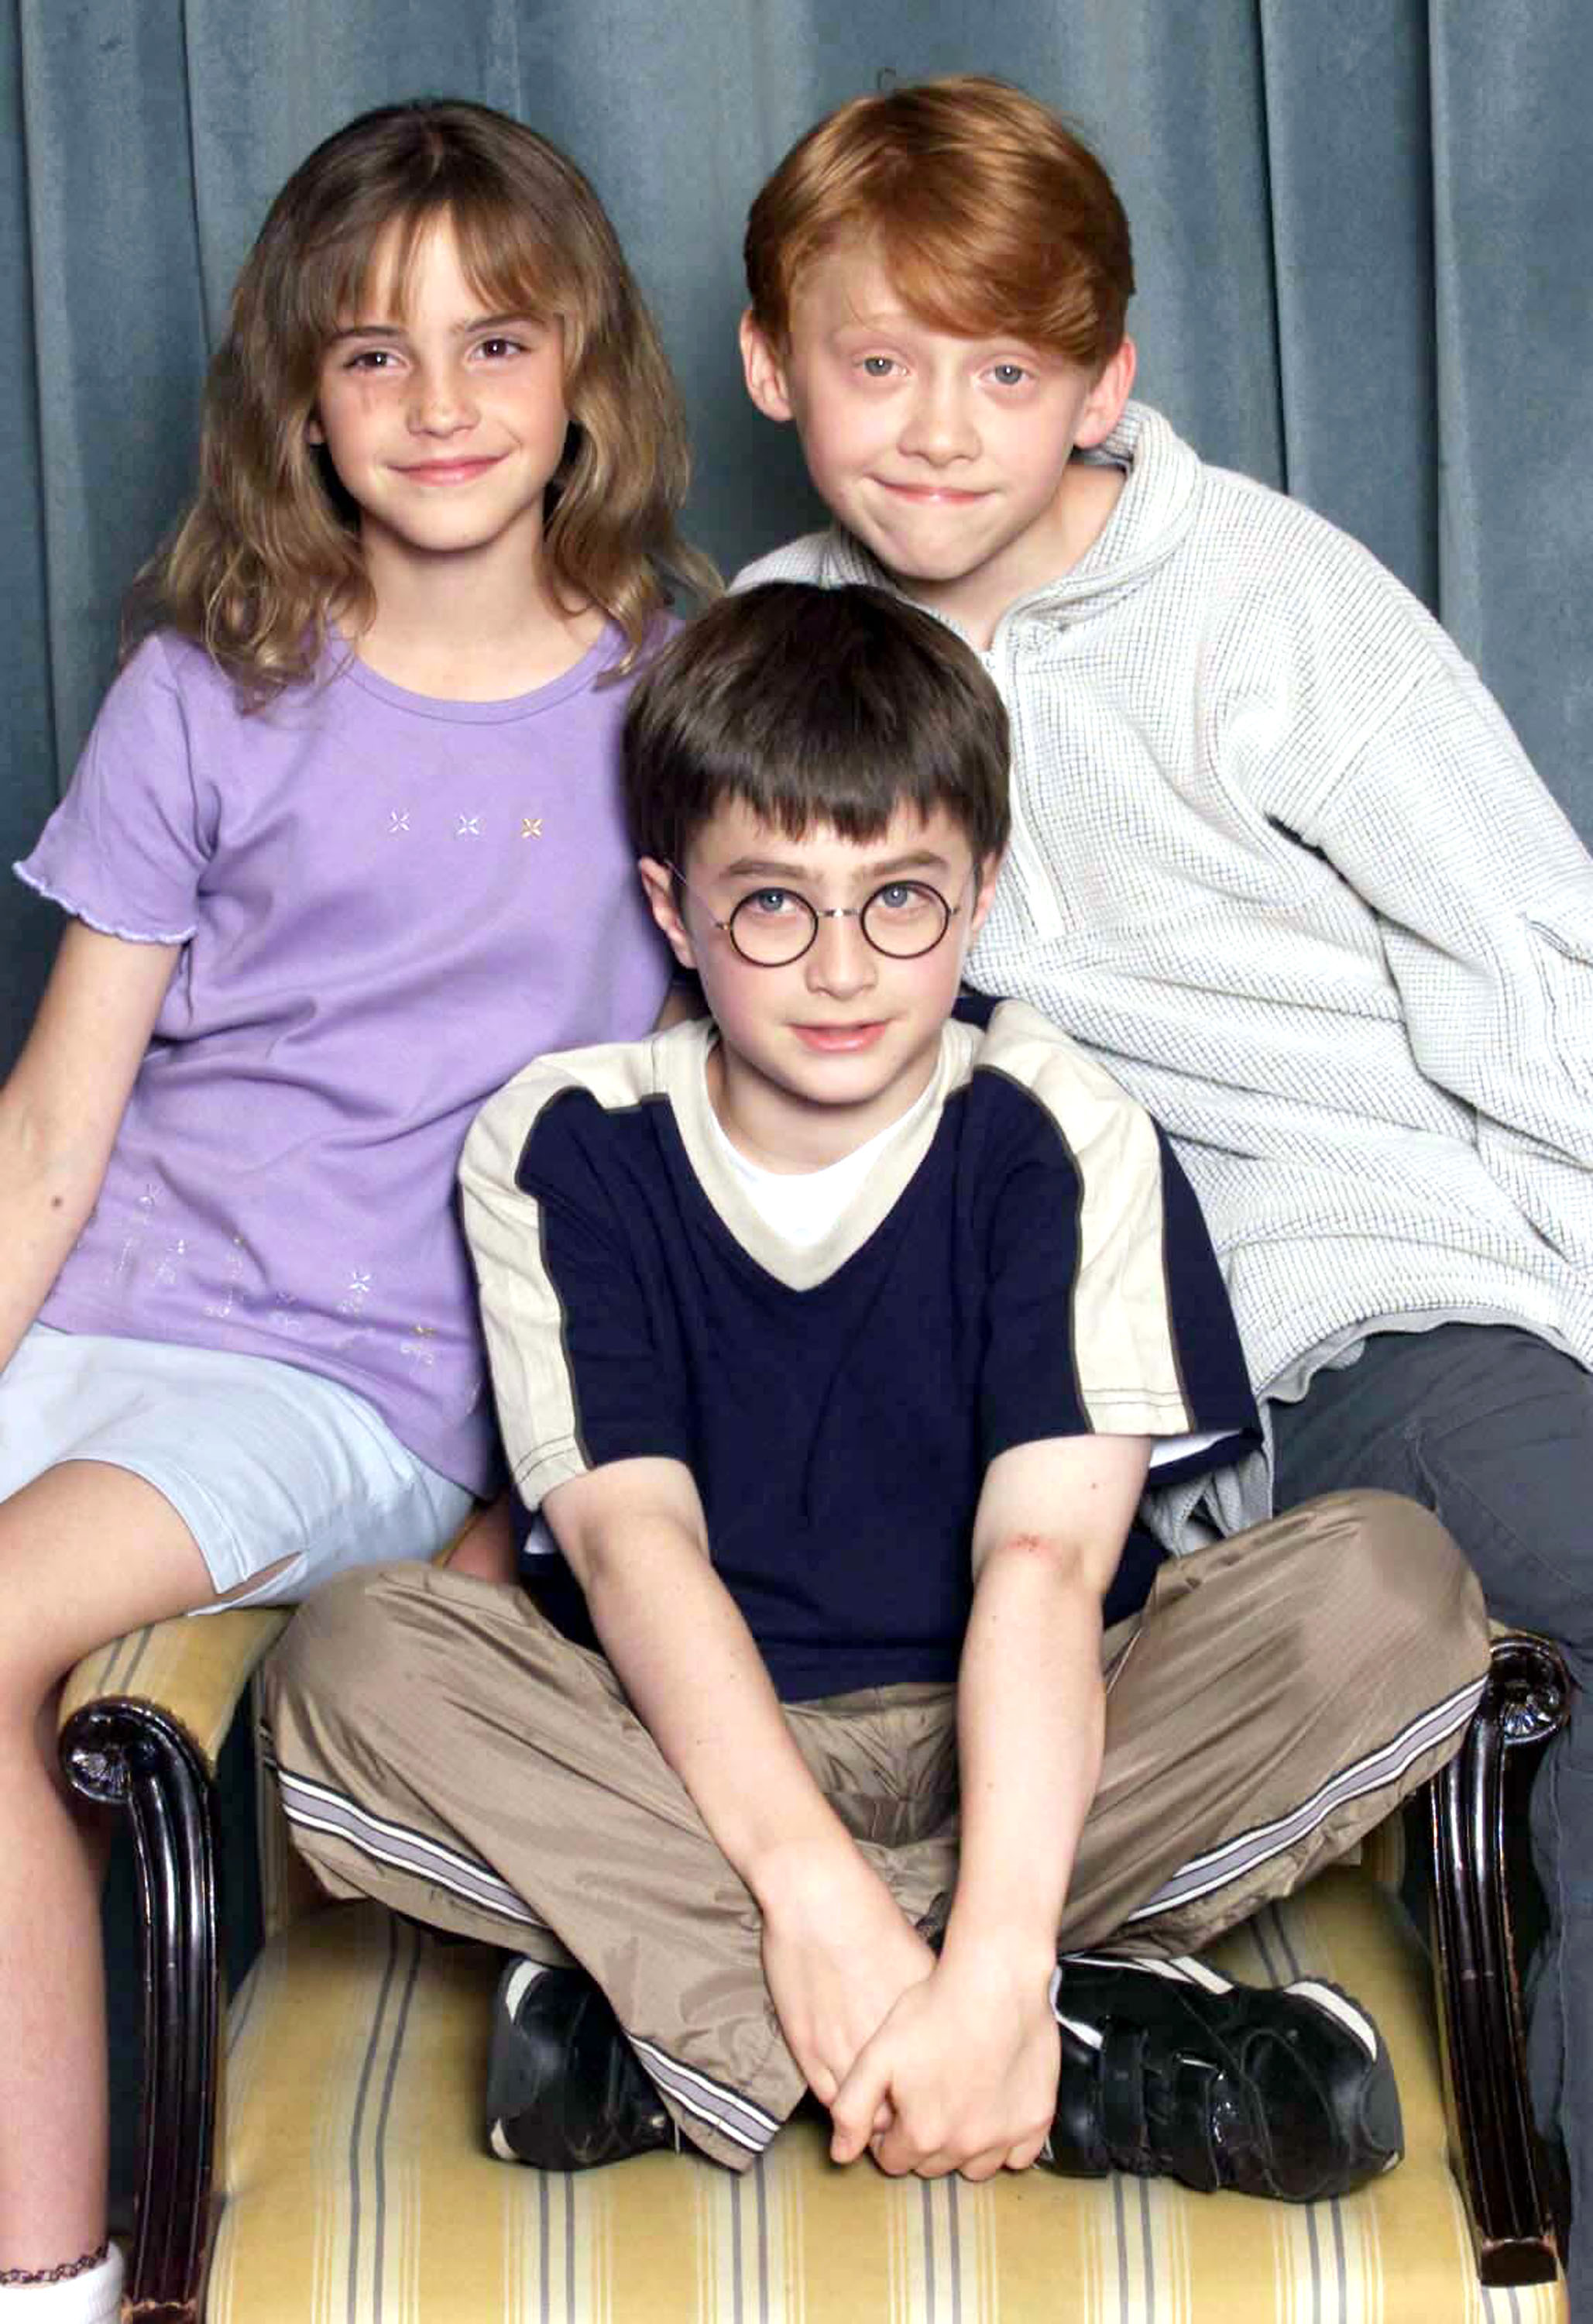 Emma Watson, Daniel Radcliffe und Rupert Grint bei einem Fotocall für "Harry Potter" in London, England am 23. August 2000 | Quelle: Getty Images